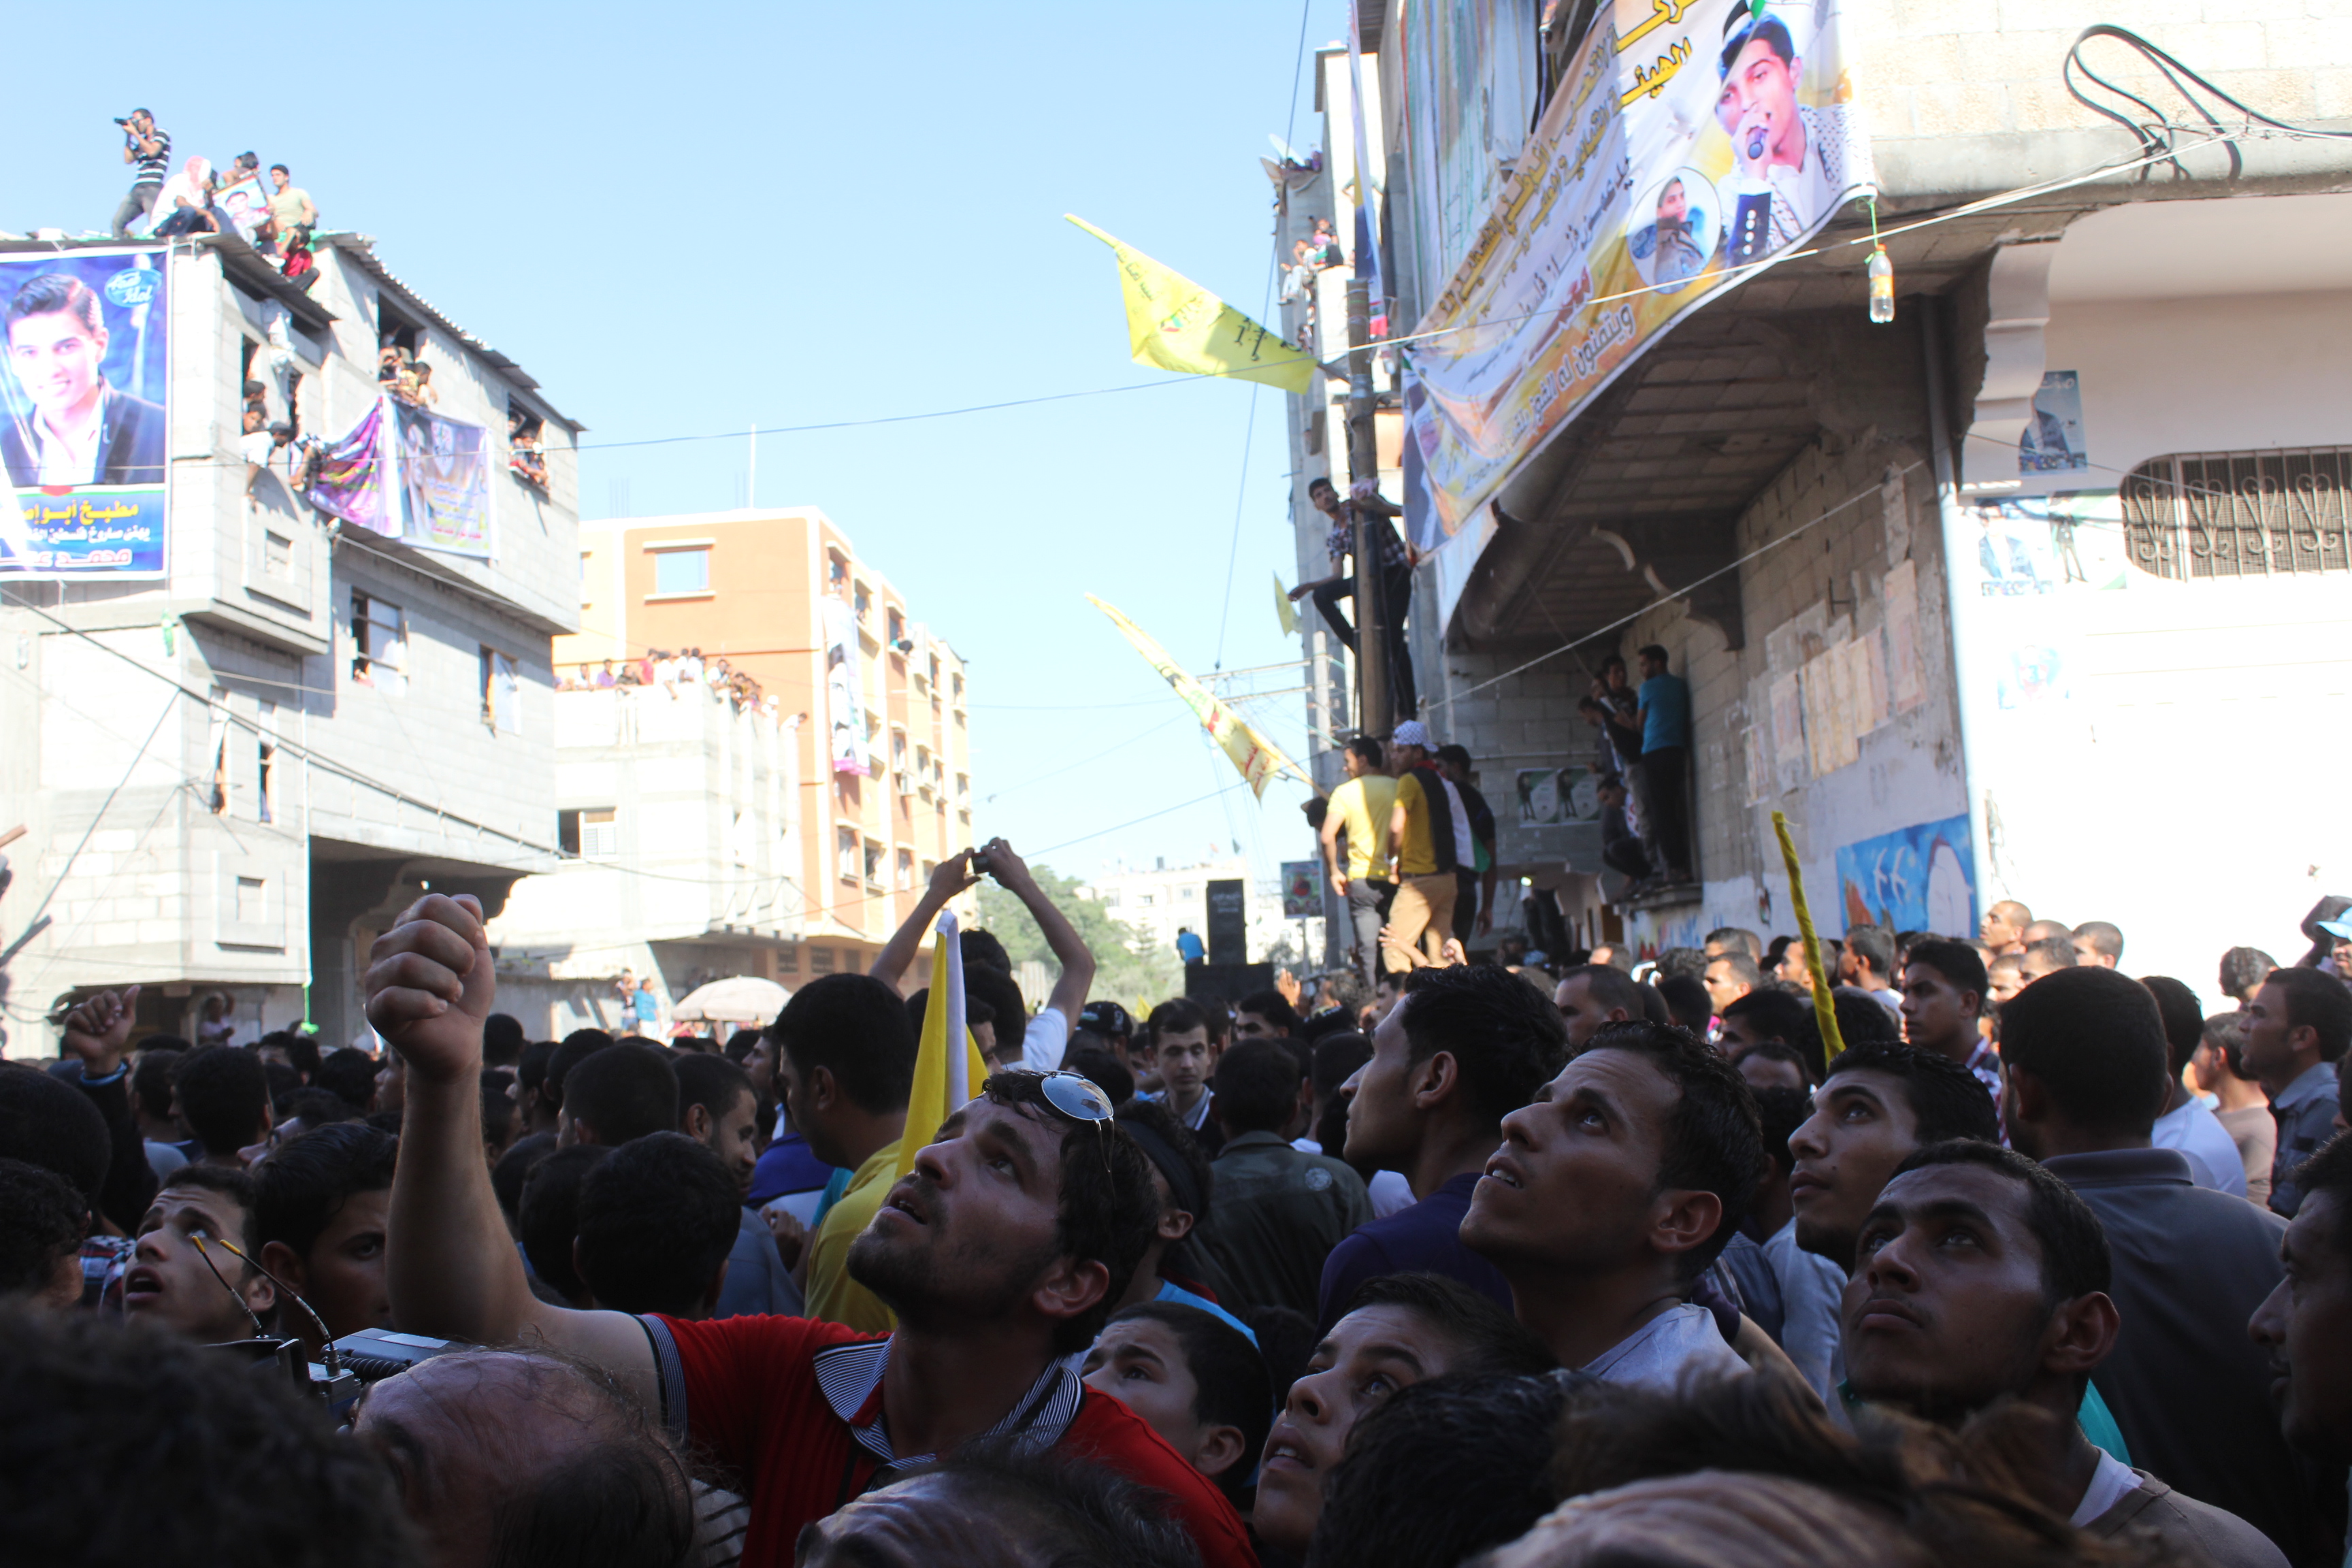 Des centaines de Gazaouis massés devant la maison de Mohammed Assaf à Khan Younes, Bande de Gaza www.merblanche.com all rights reserved